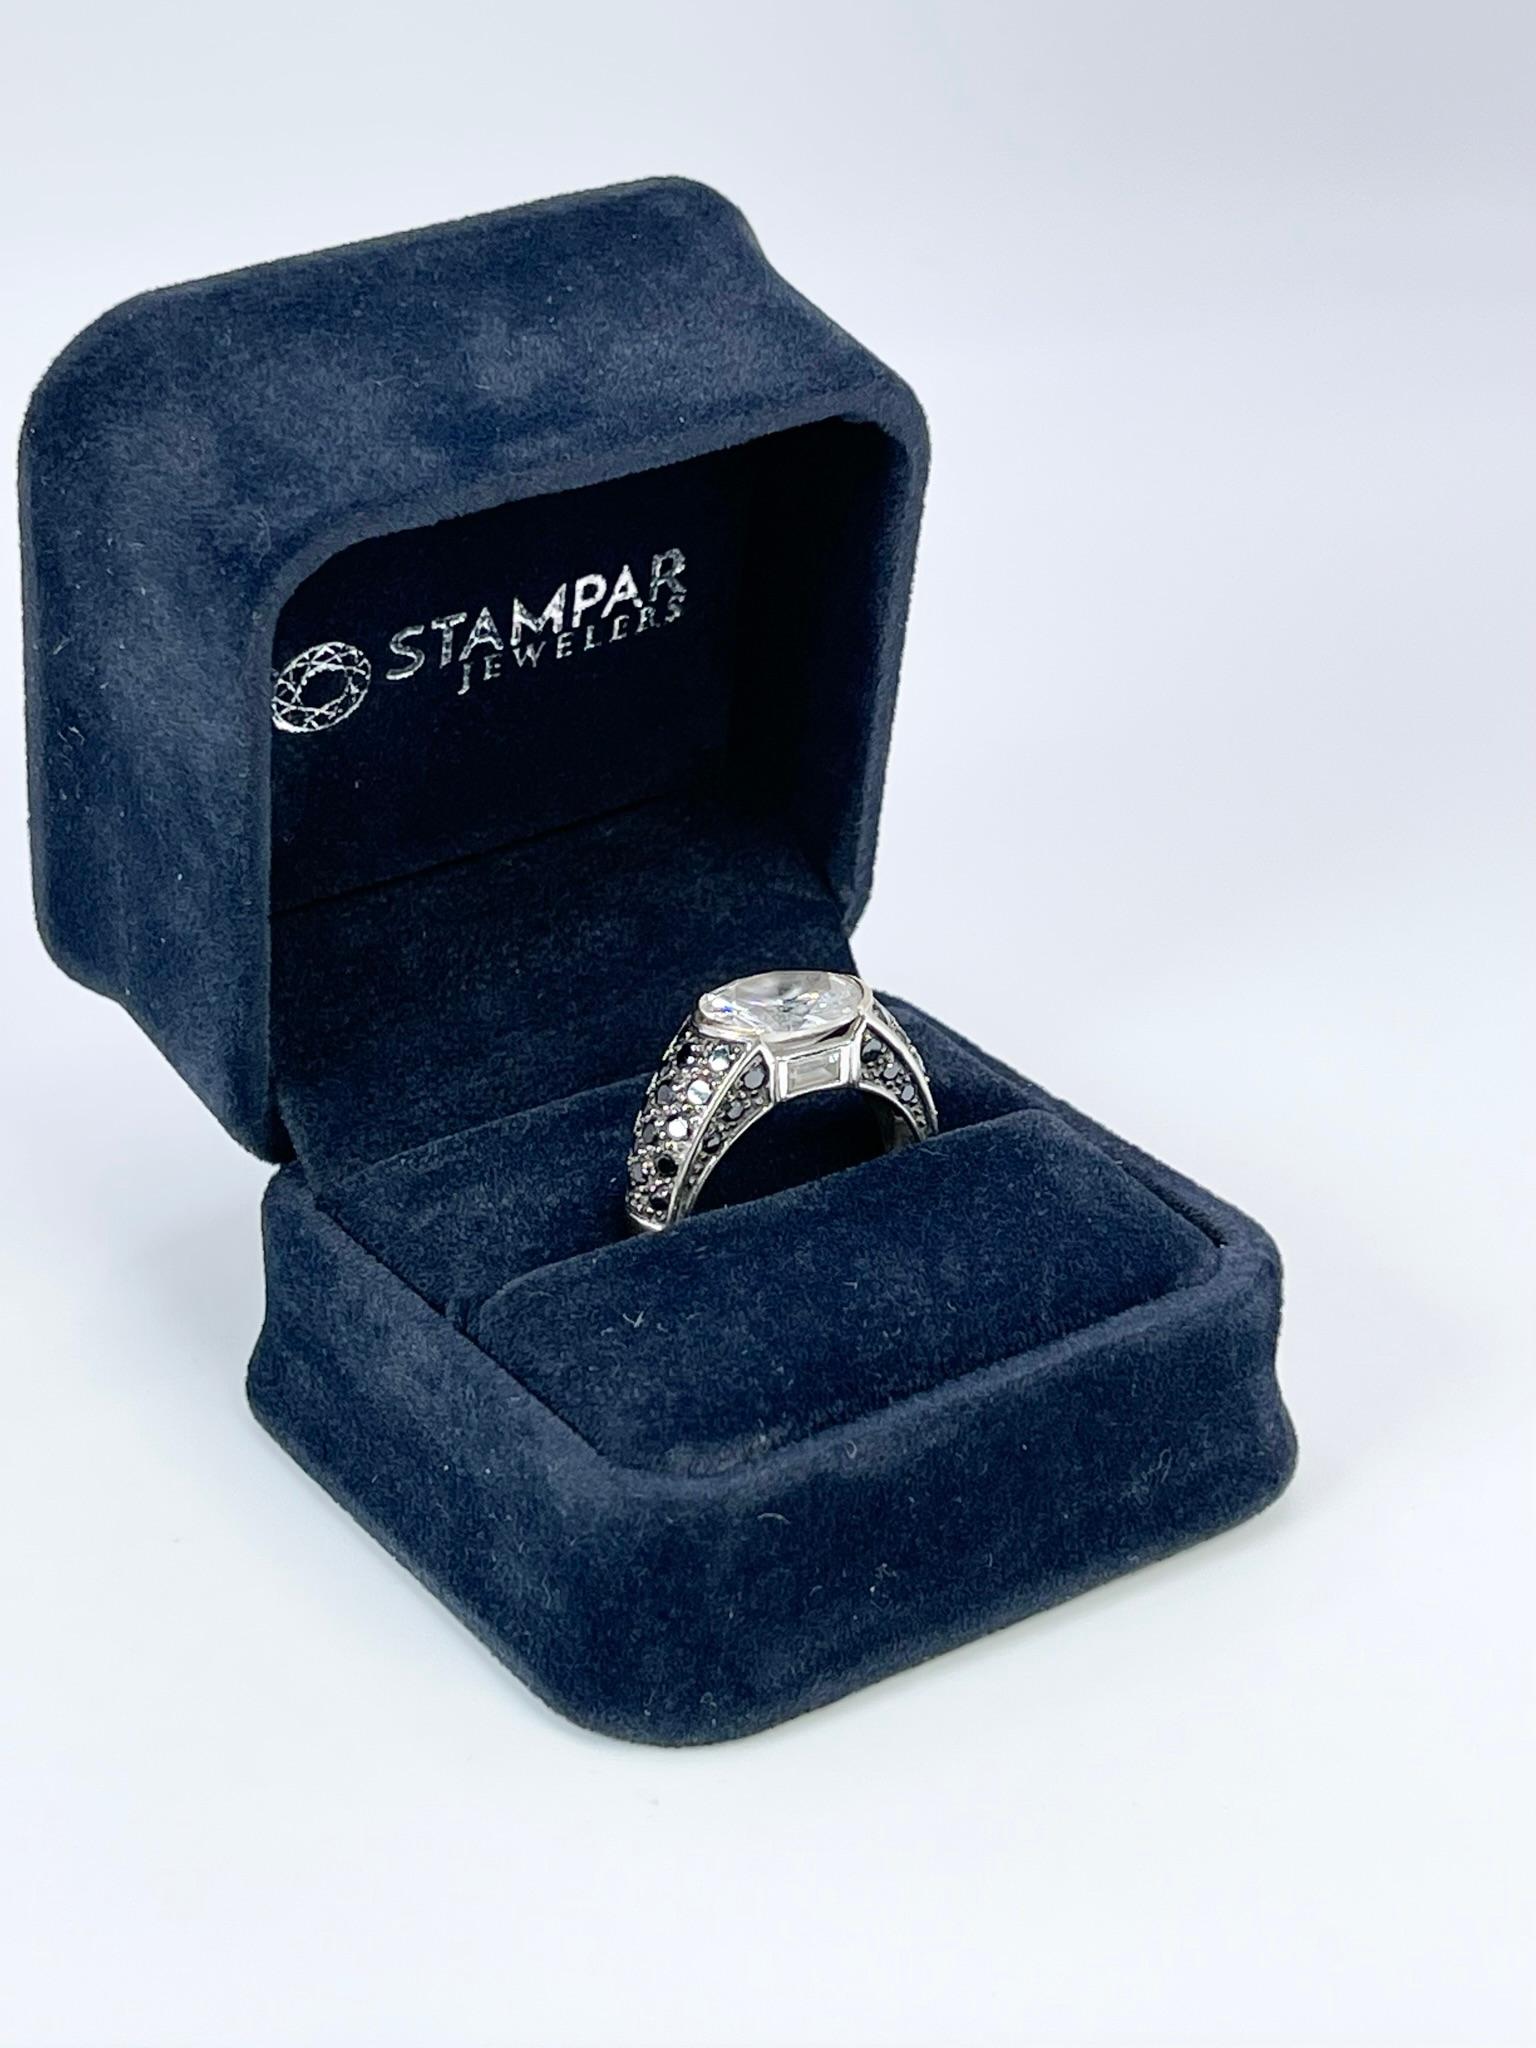 Modernist Unisex Black Diamond Ring 18KT White Gold Modern Style For Sale